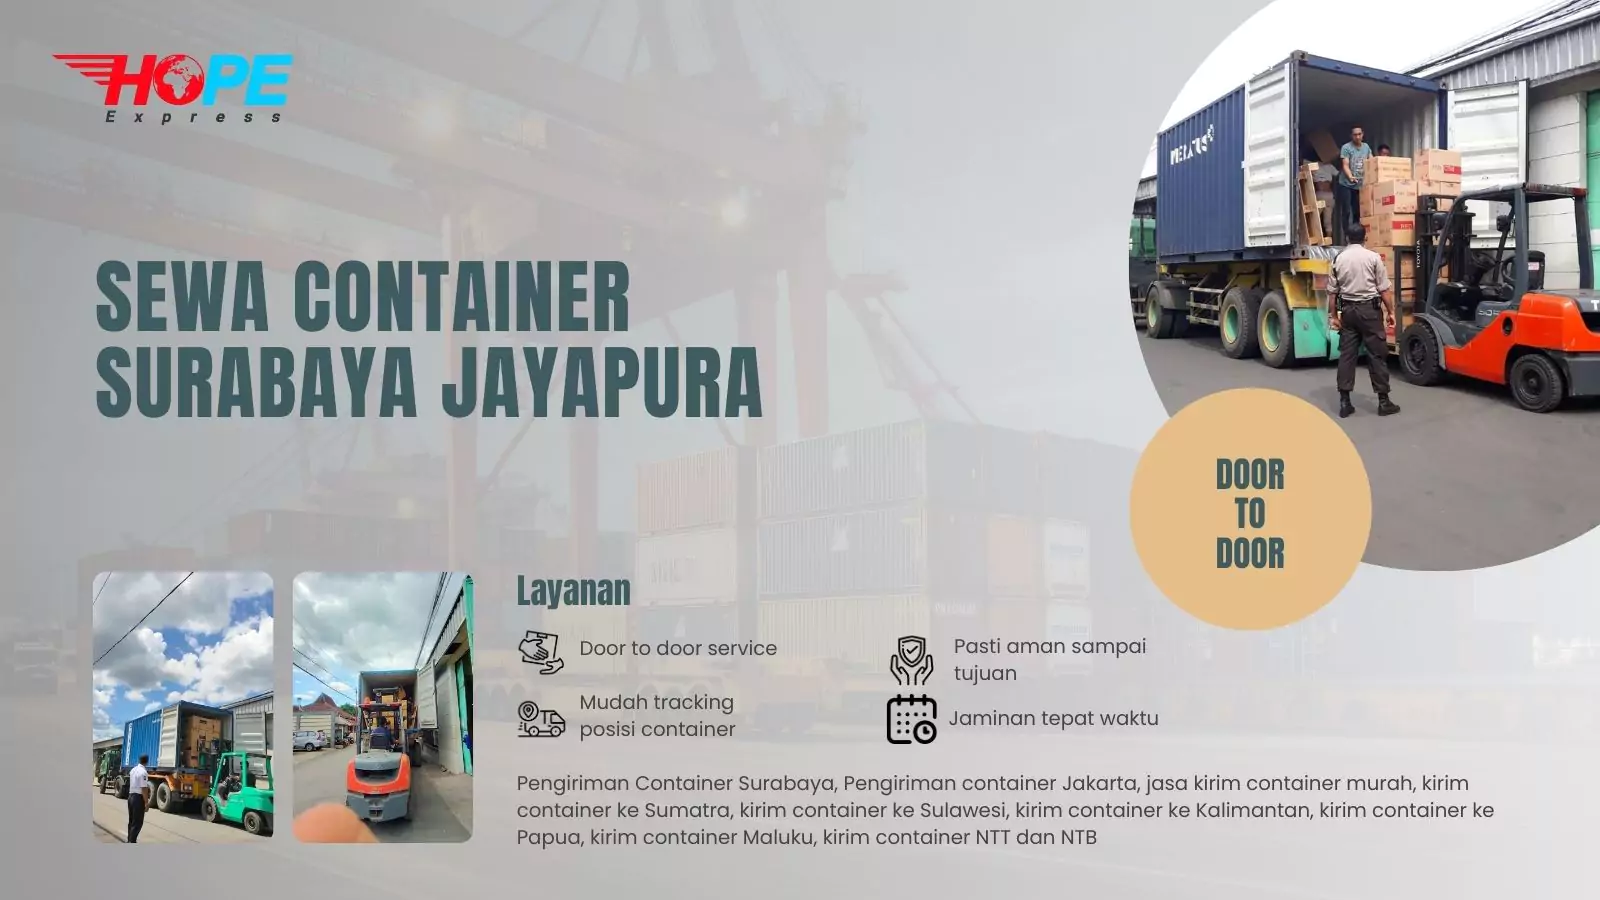 Sewa Container Surabaya Jayapura